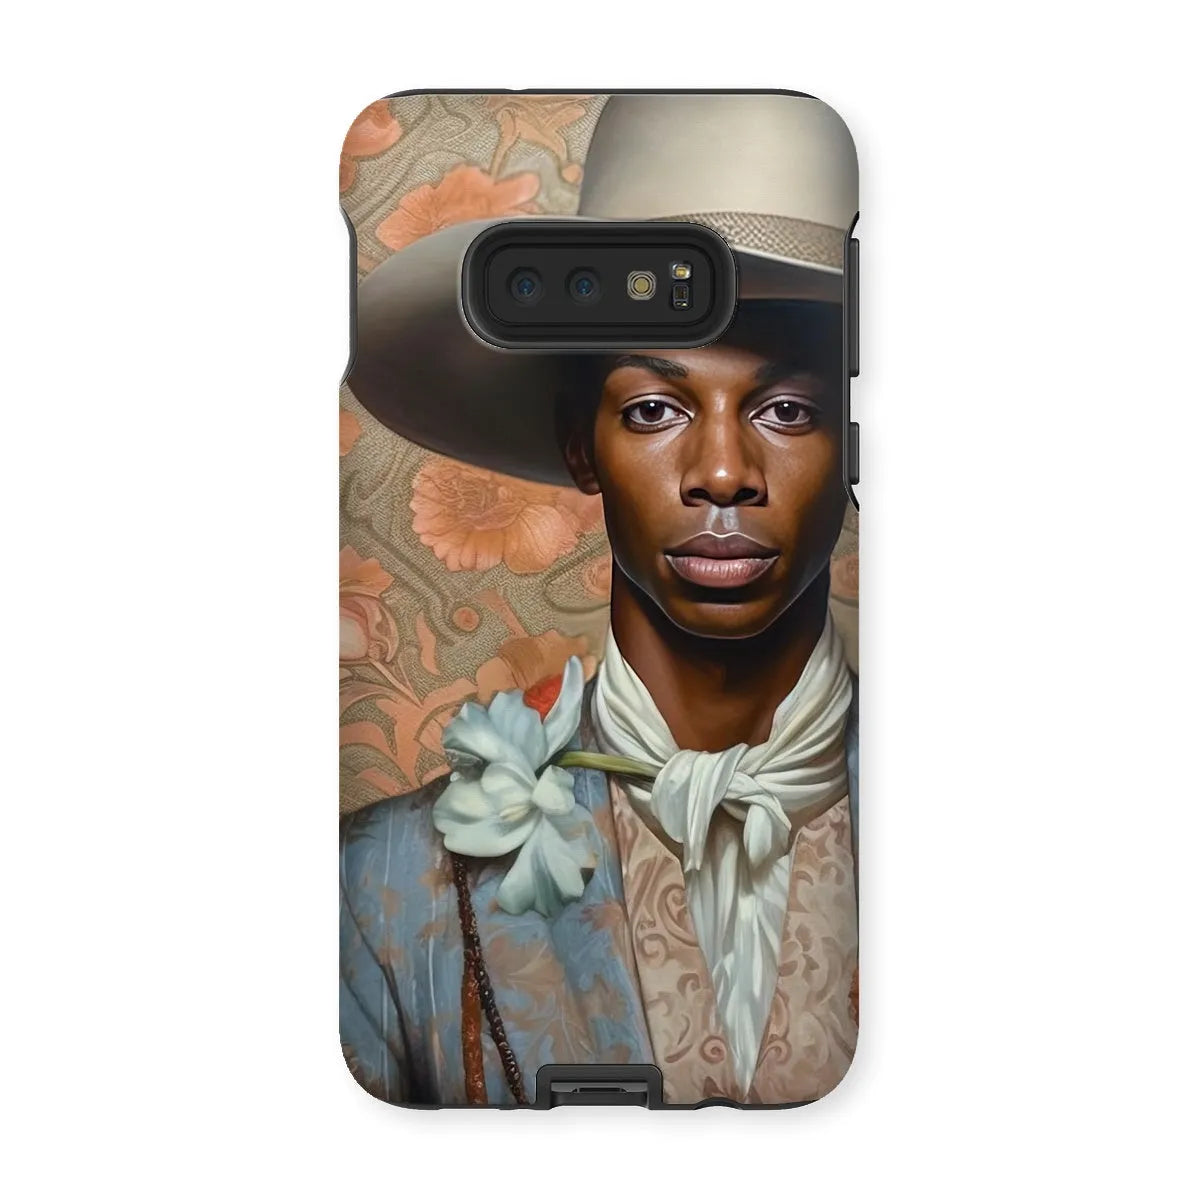 Apollo The Gay Cowboy - Gay Aesthetic Art Phone Case - Samsung Galaxy S10e / Matte - Mobile Phone Cases - Aesthetic Art